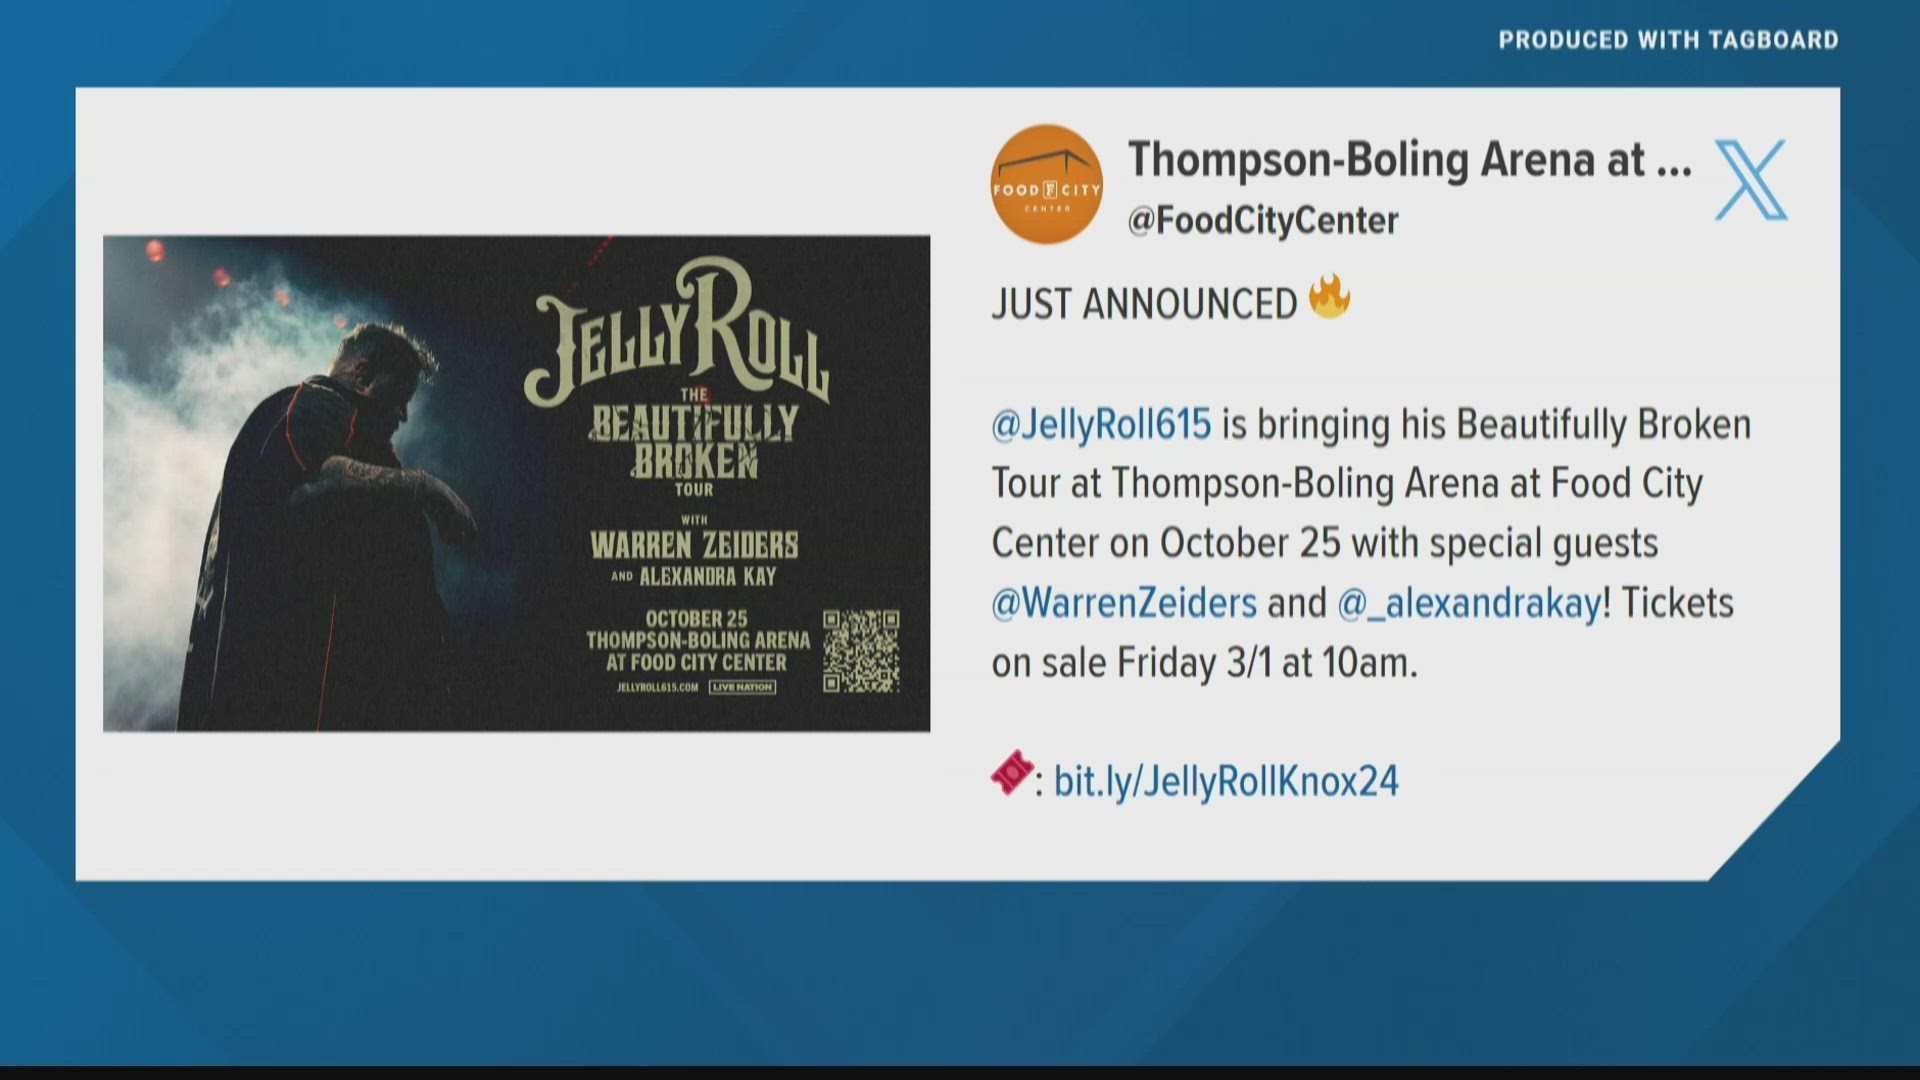 The Nashville-native singer announced his tour dates on social media Thursday morning.